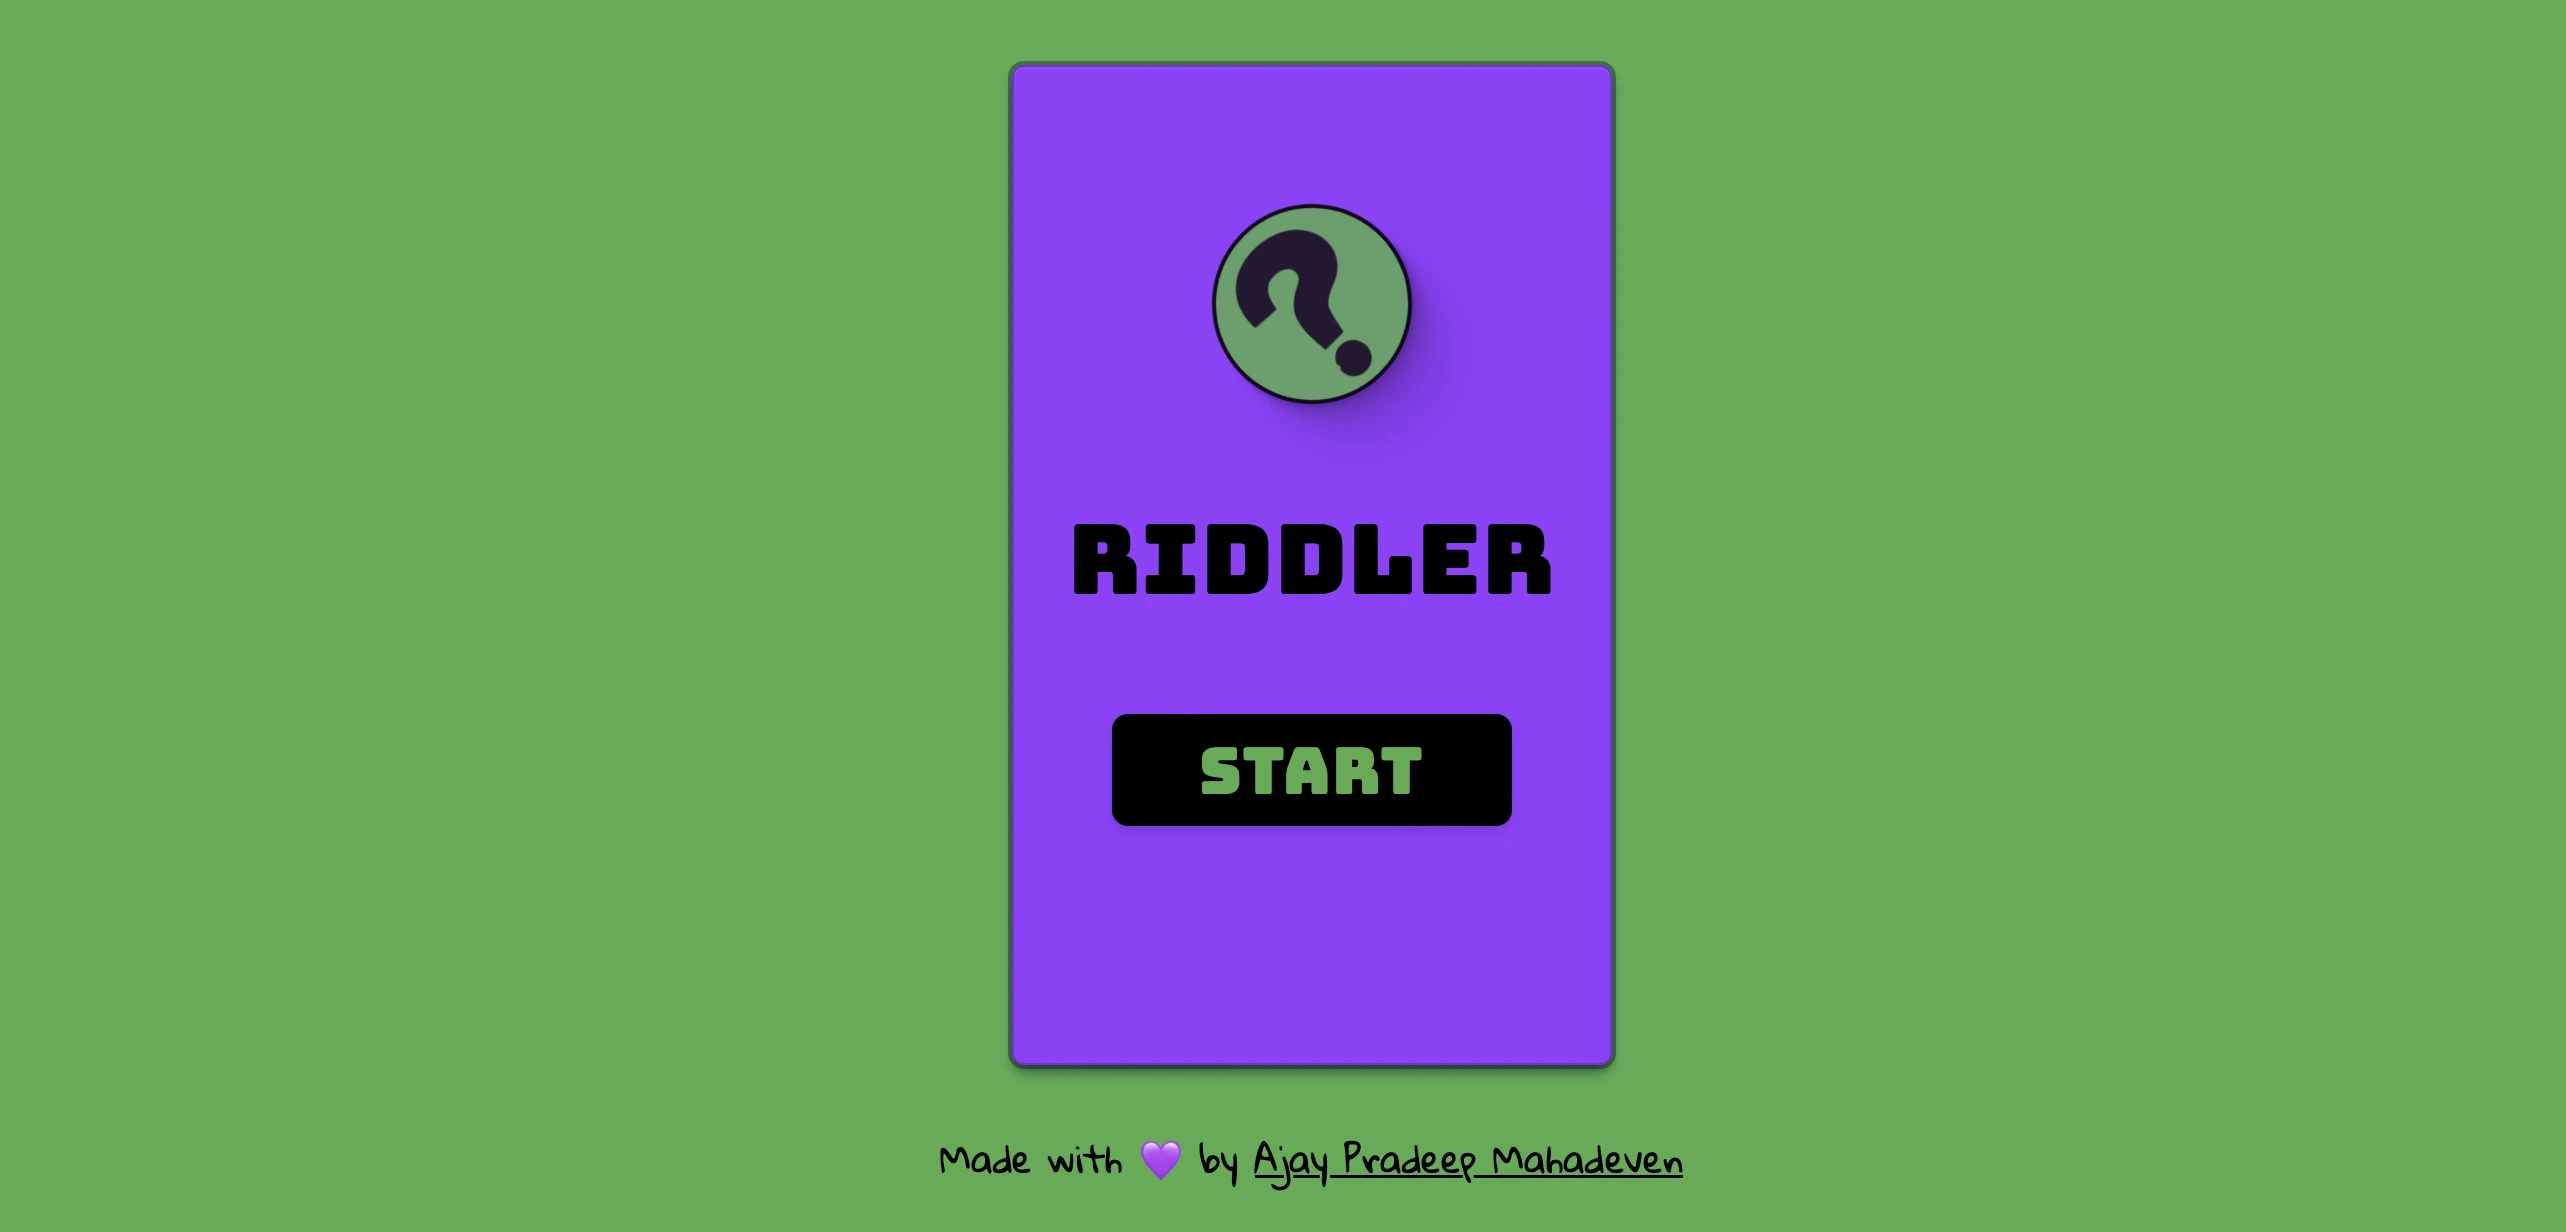 Riddler Game website 